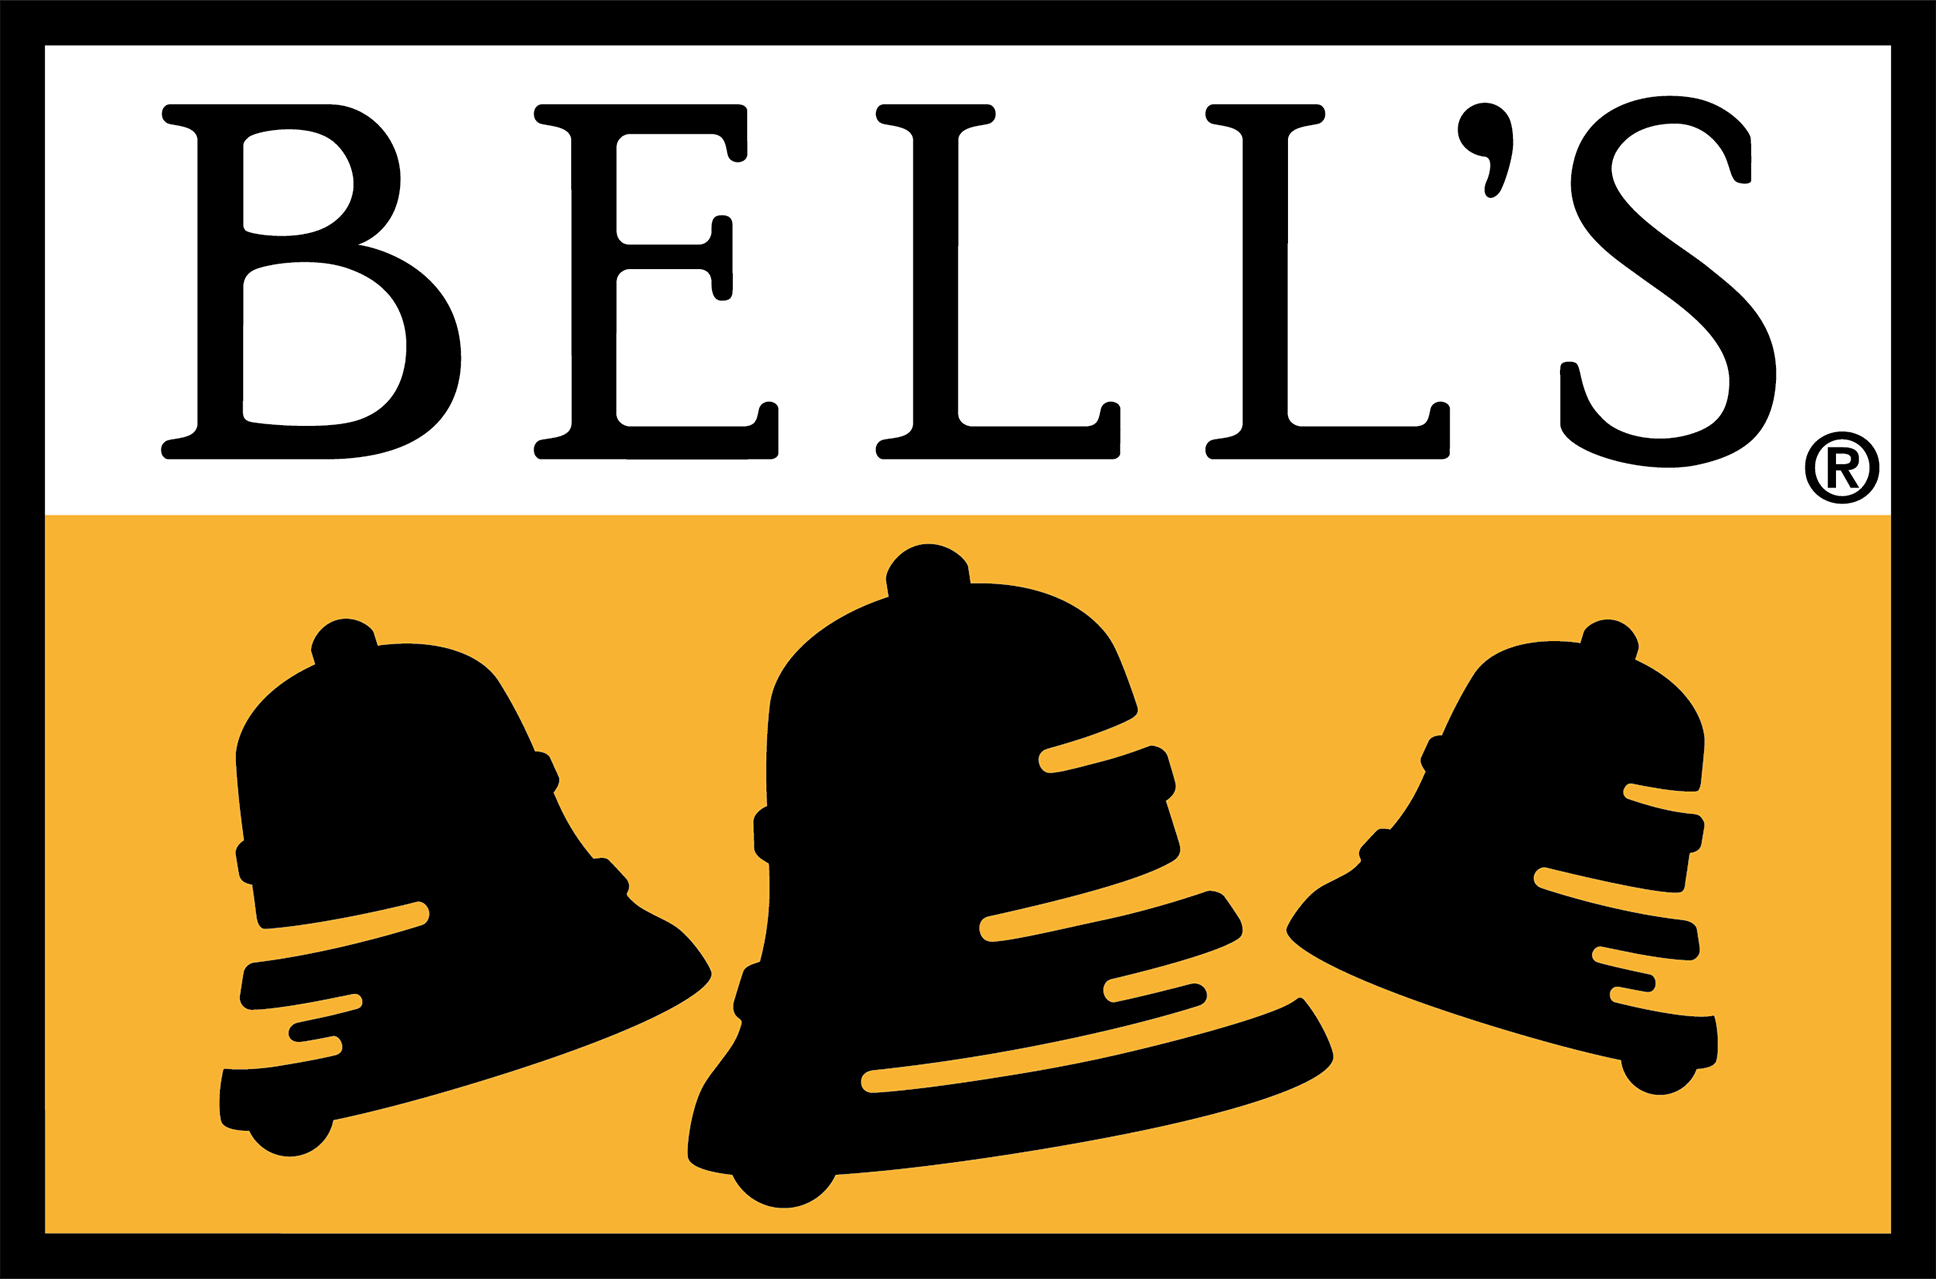 Bell's logo